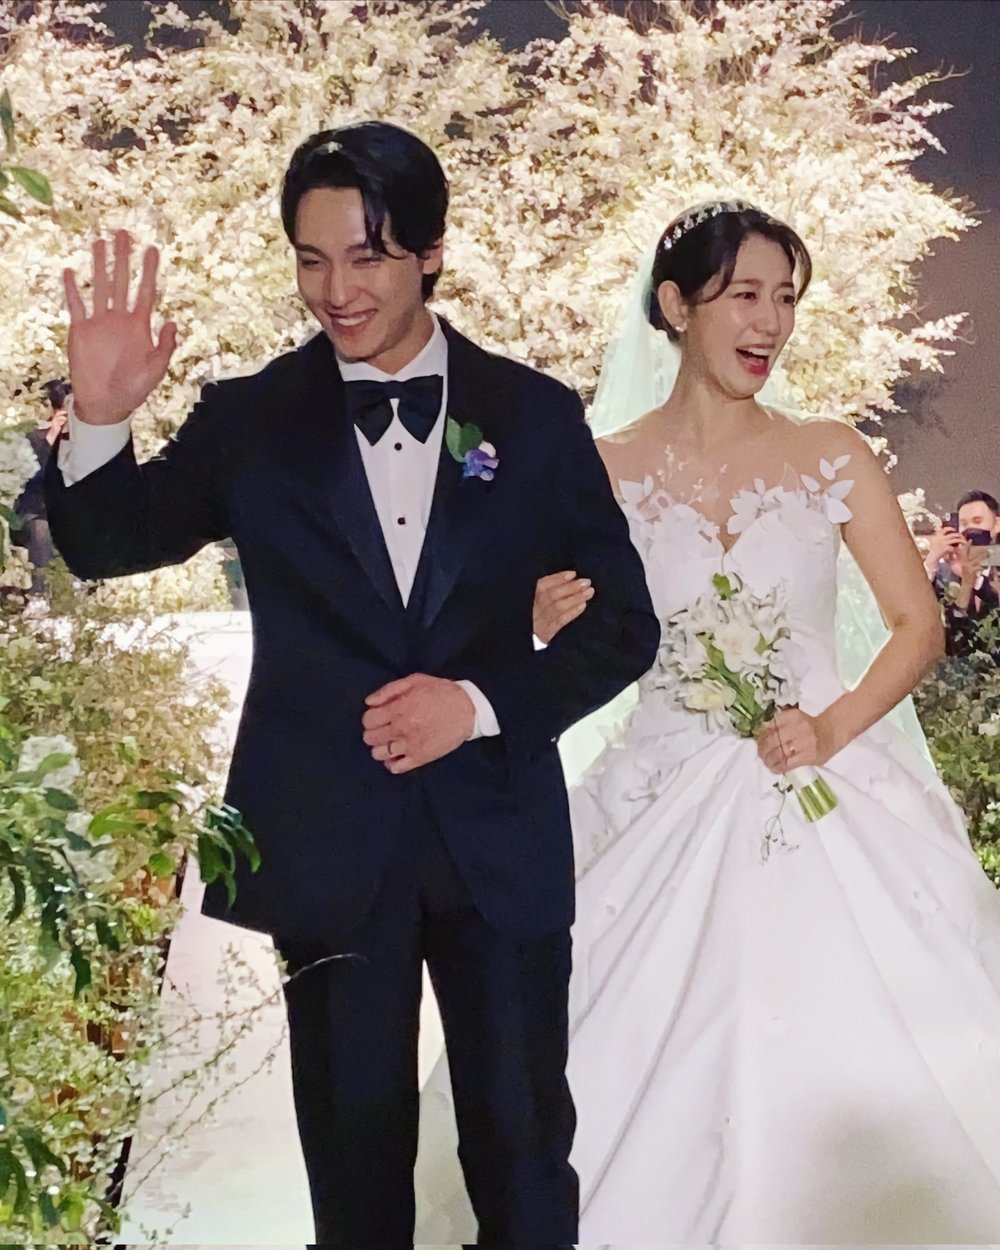 Những khoảnh khắc đẹp nhất trong đám cưới của Shin Hye và Tae Joon - Hình 2